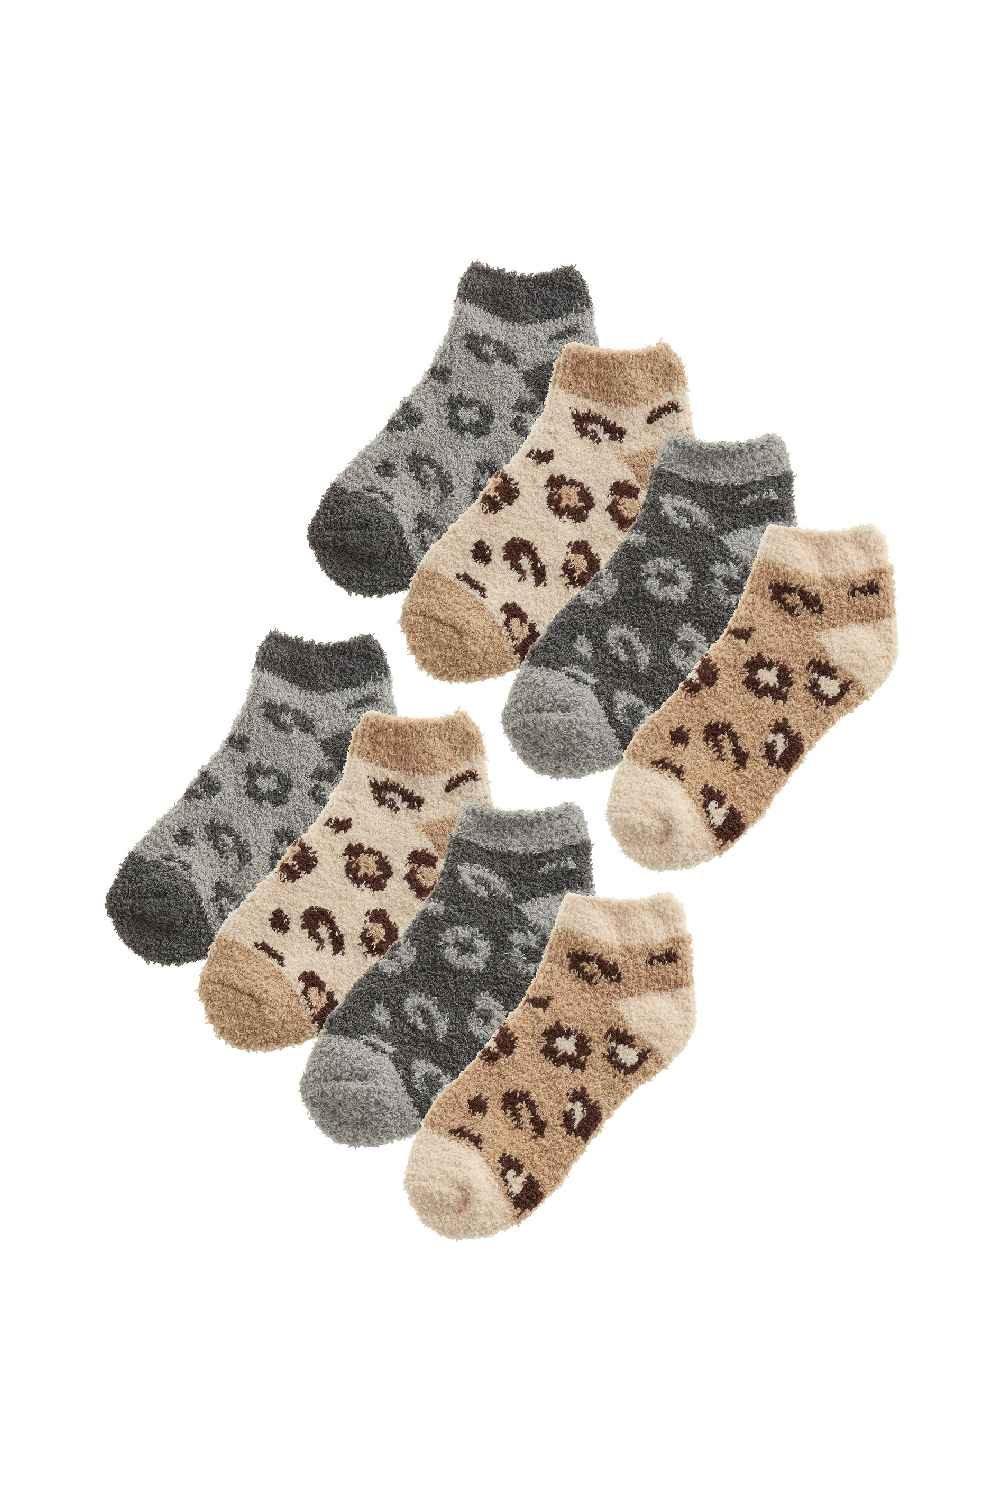 8 Pair Multipack Fluffy Ankle Socks - Novelty Animal Print Socks